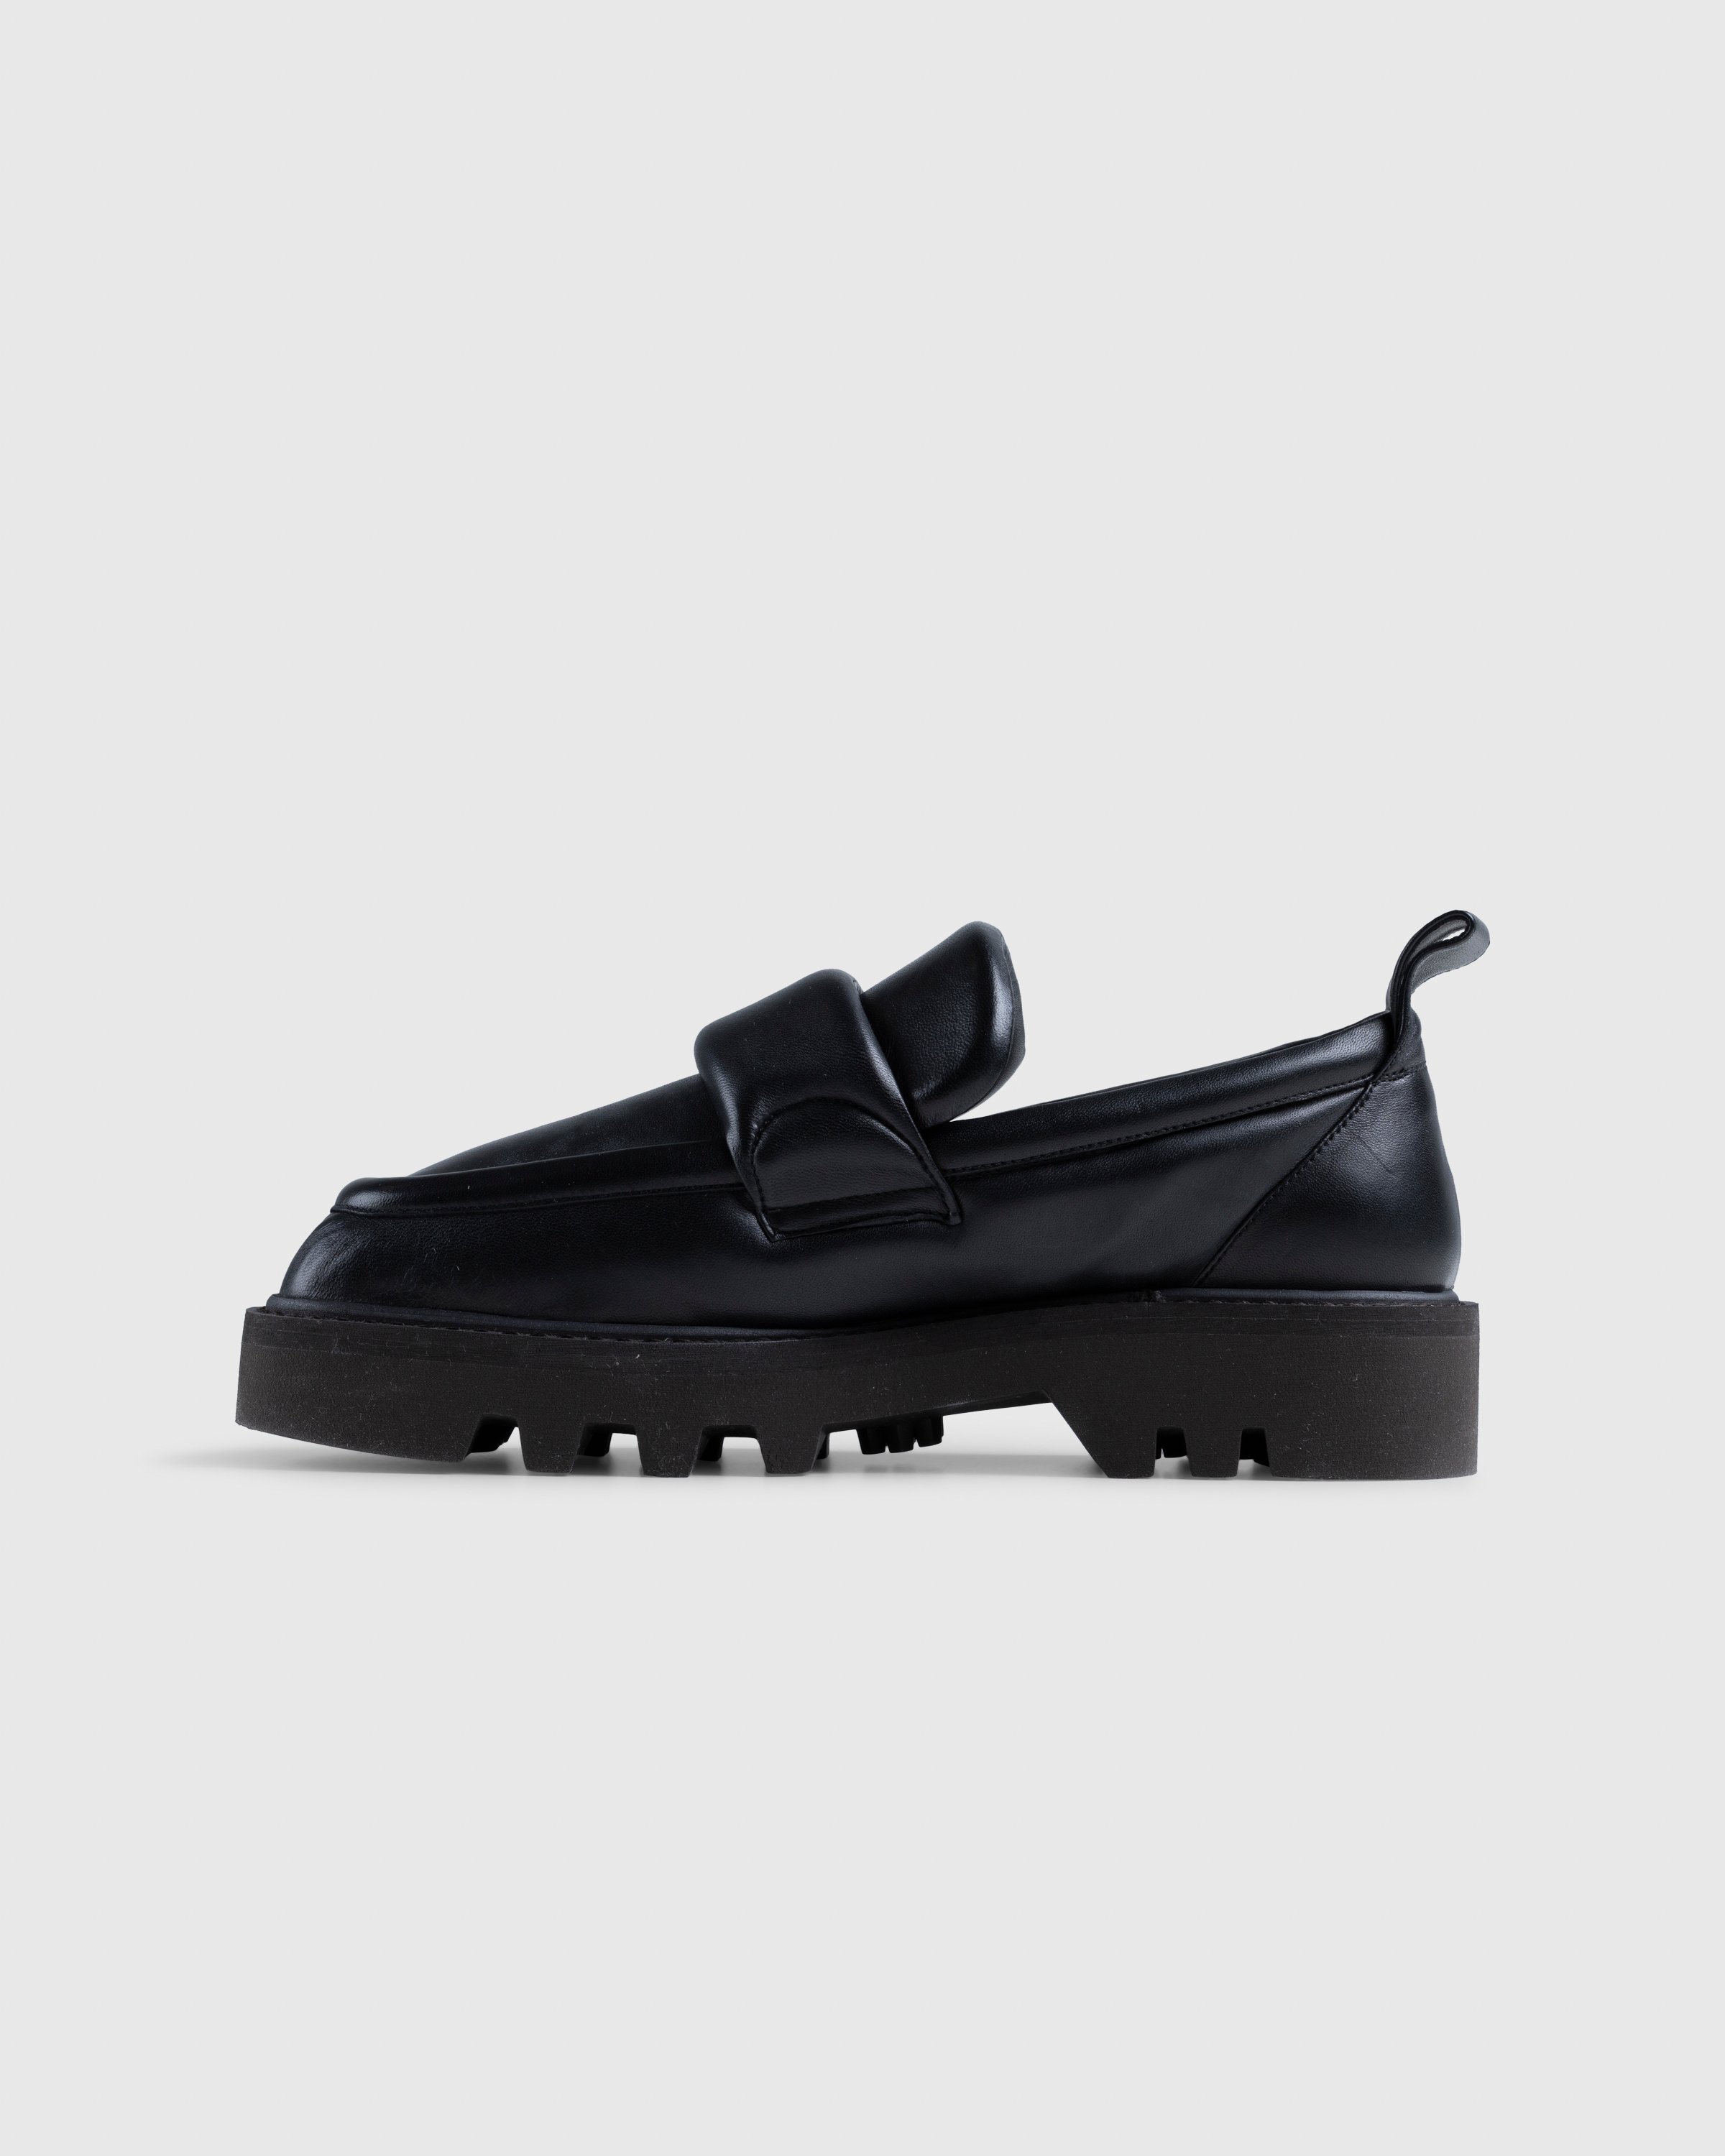 Dries van Noten - Padded Leather Loafers Black - Footwear - Black - Image 2